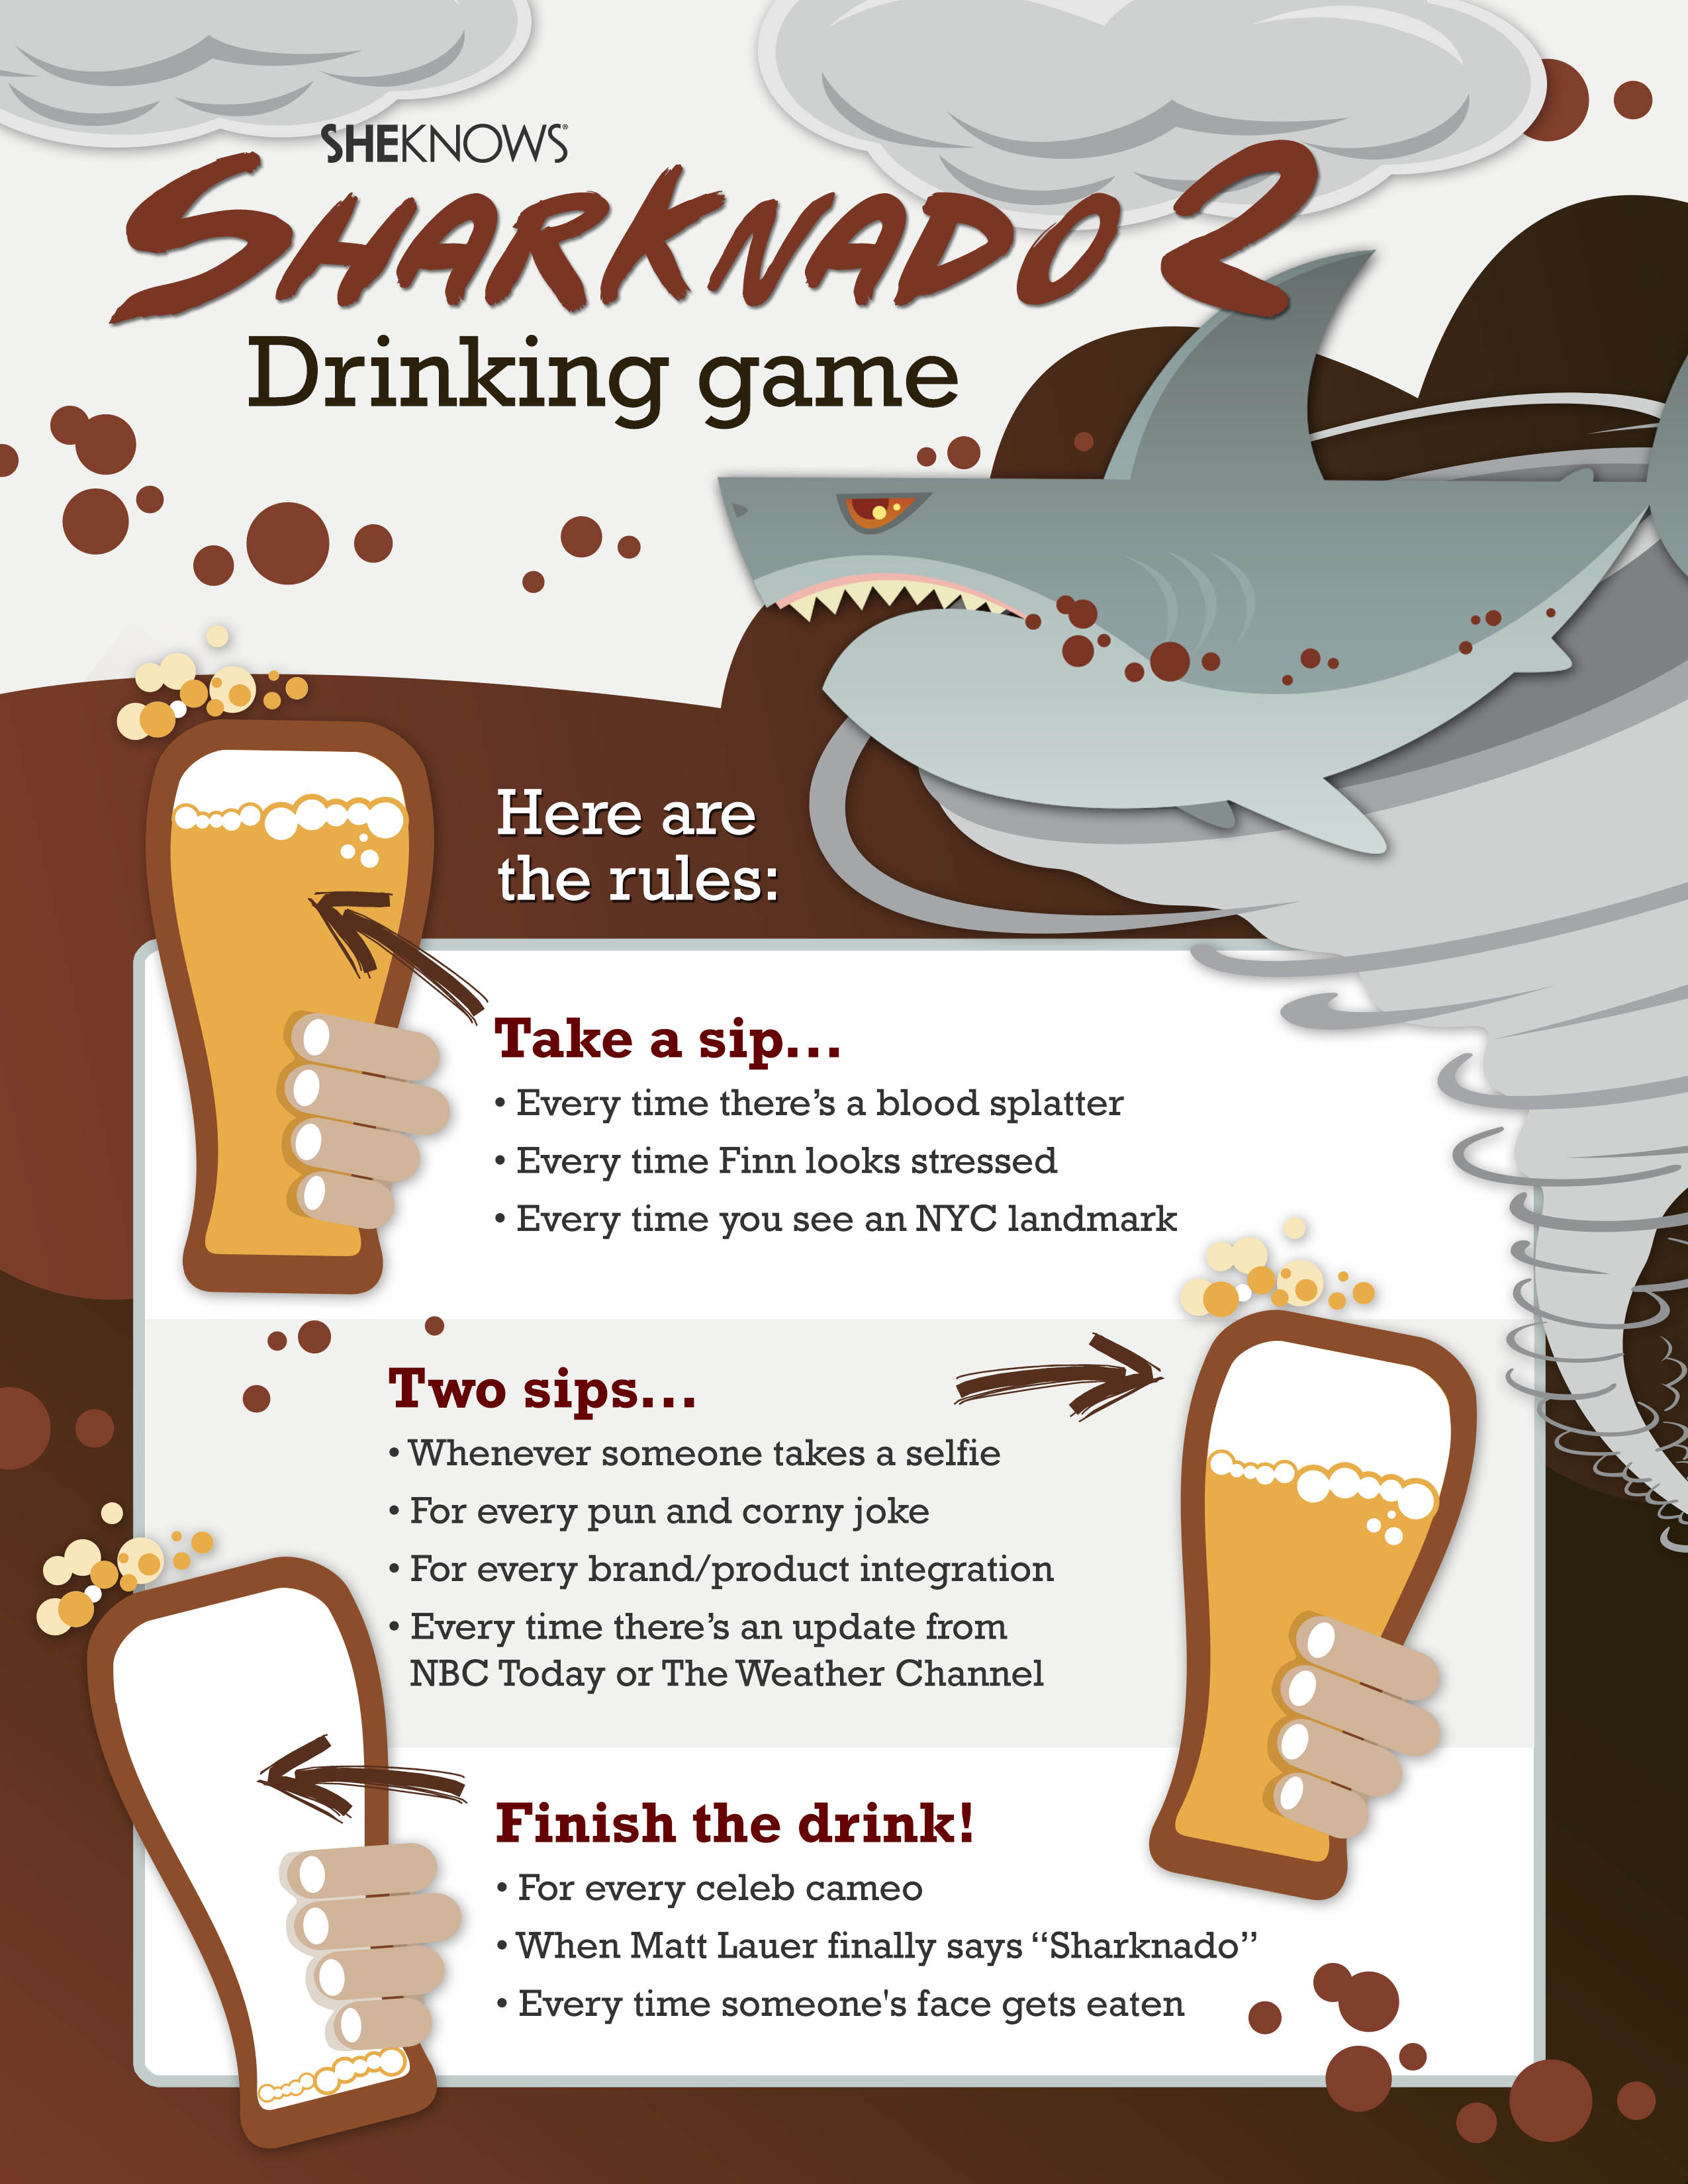 Sharknado drinking game